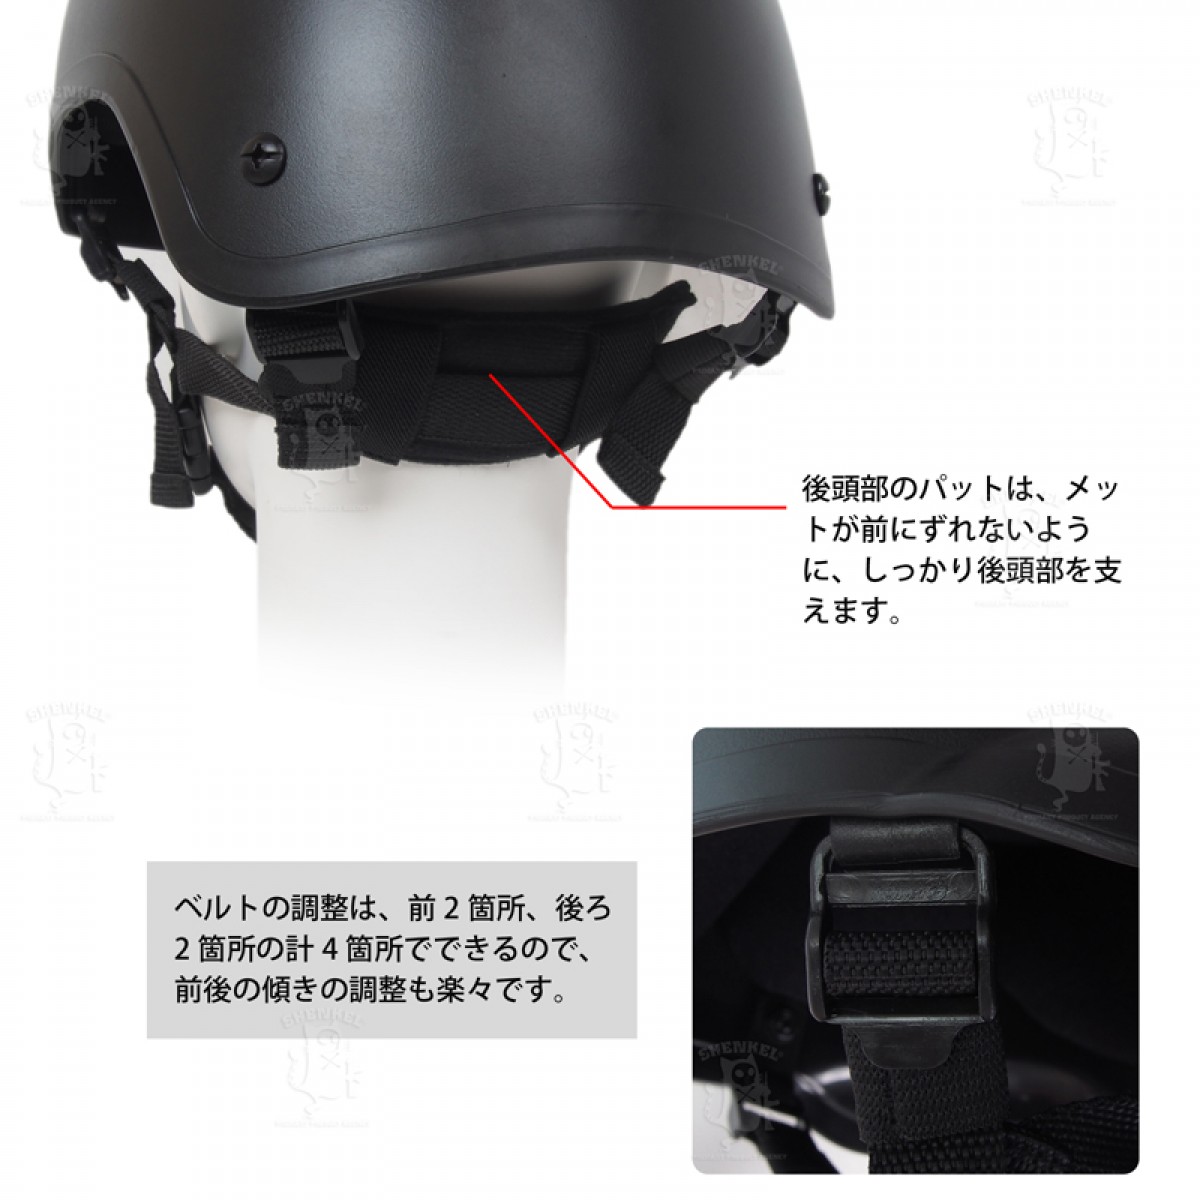 MICH2001タイプヘルメット　サバゲー　米軍